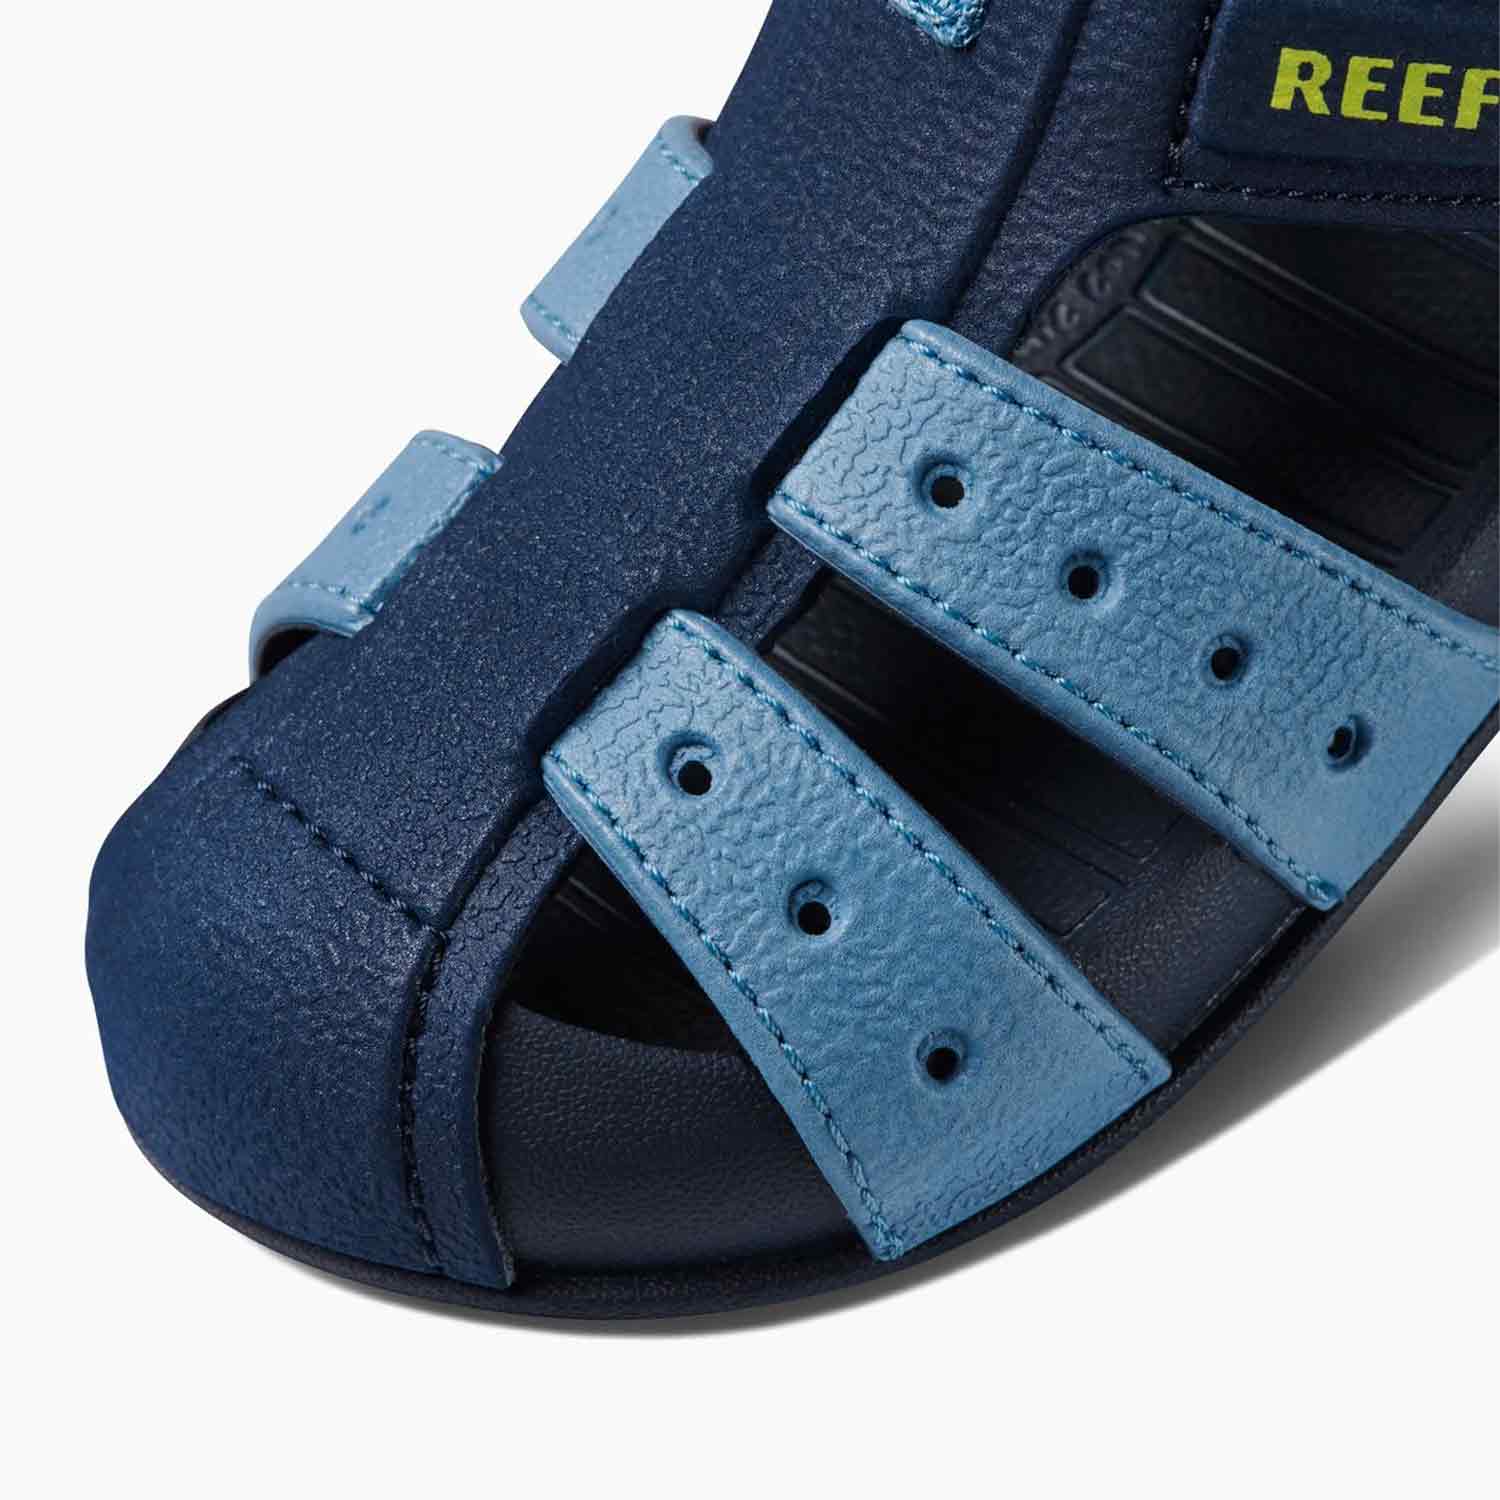 ריף סנדלים סגורים בצבע כחול לתינוקות-Reef-19-נאקו